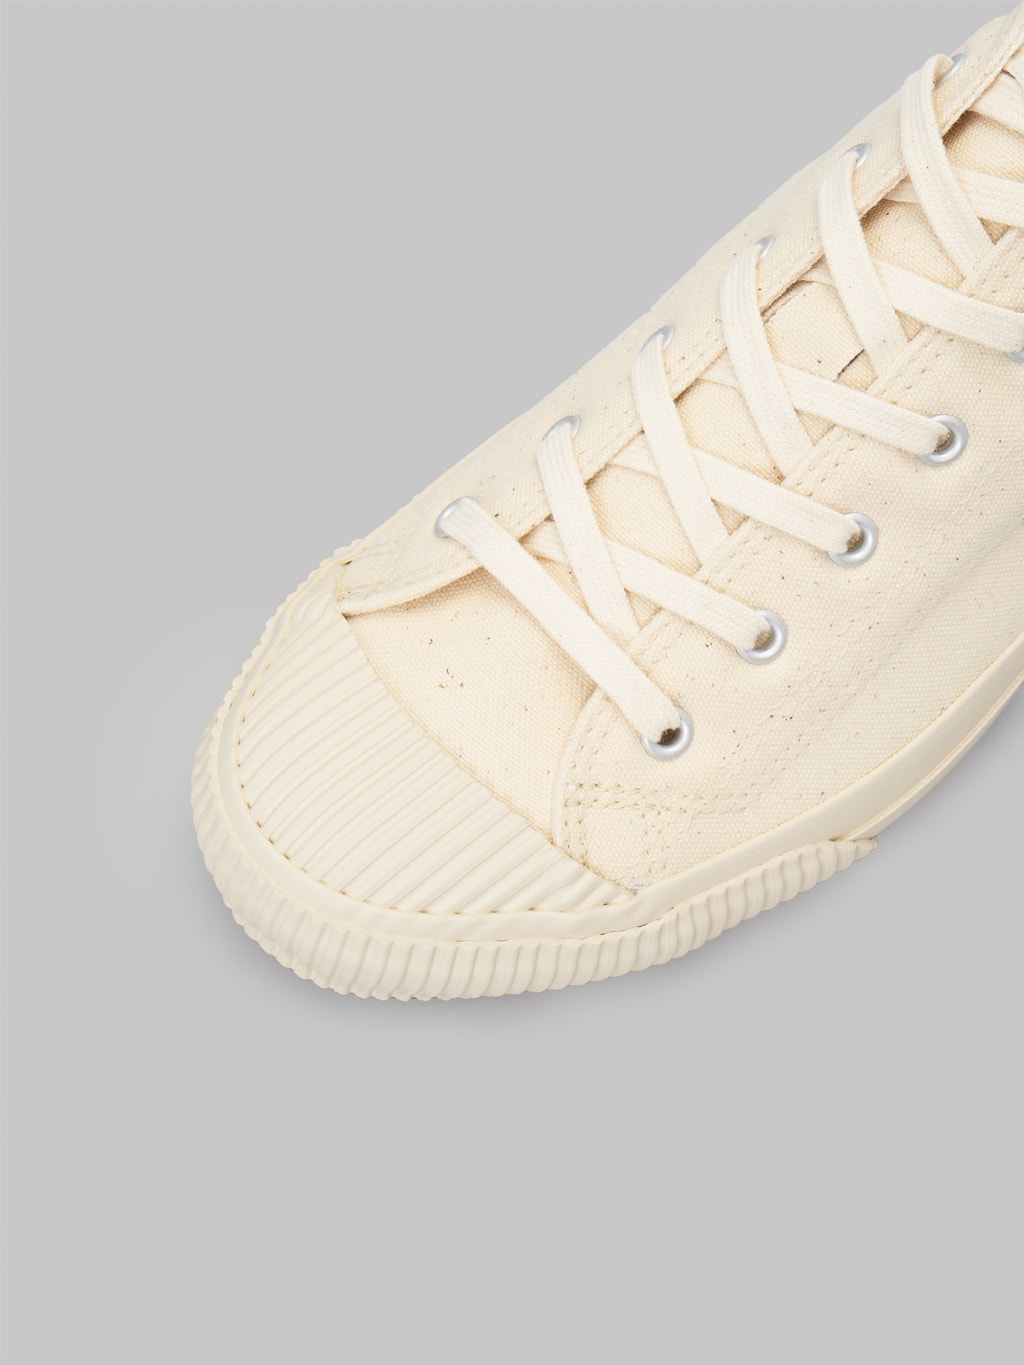 Pras Shellcap Low Sneakers Kinari off white comfort toe